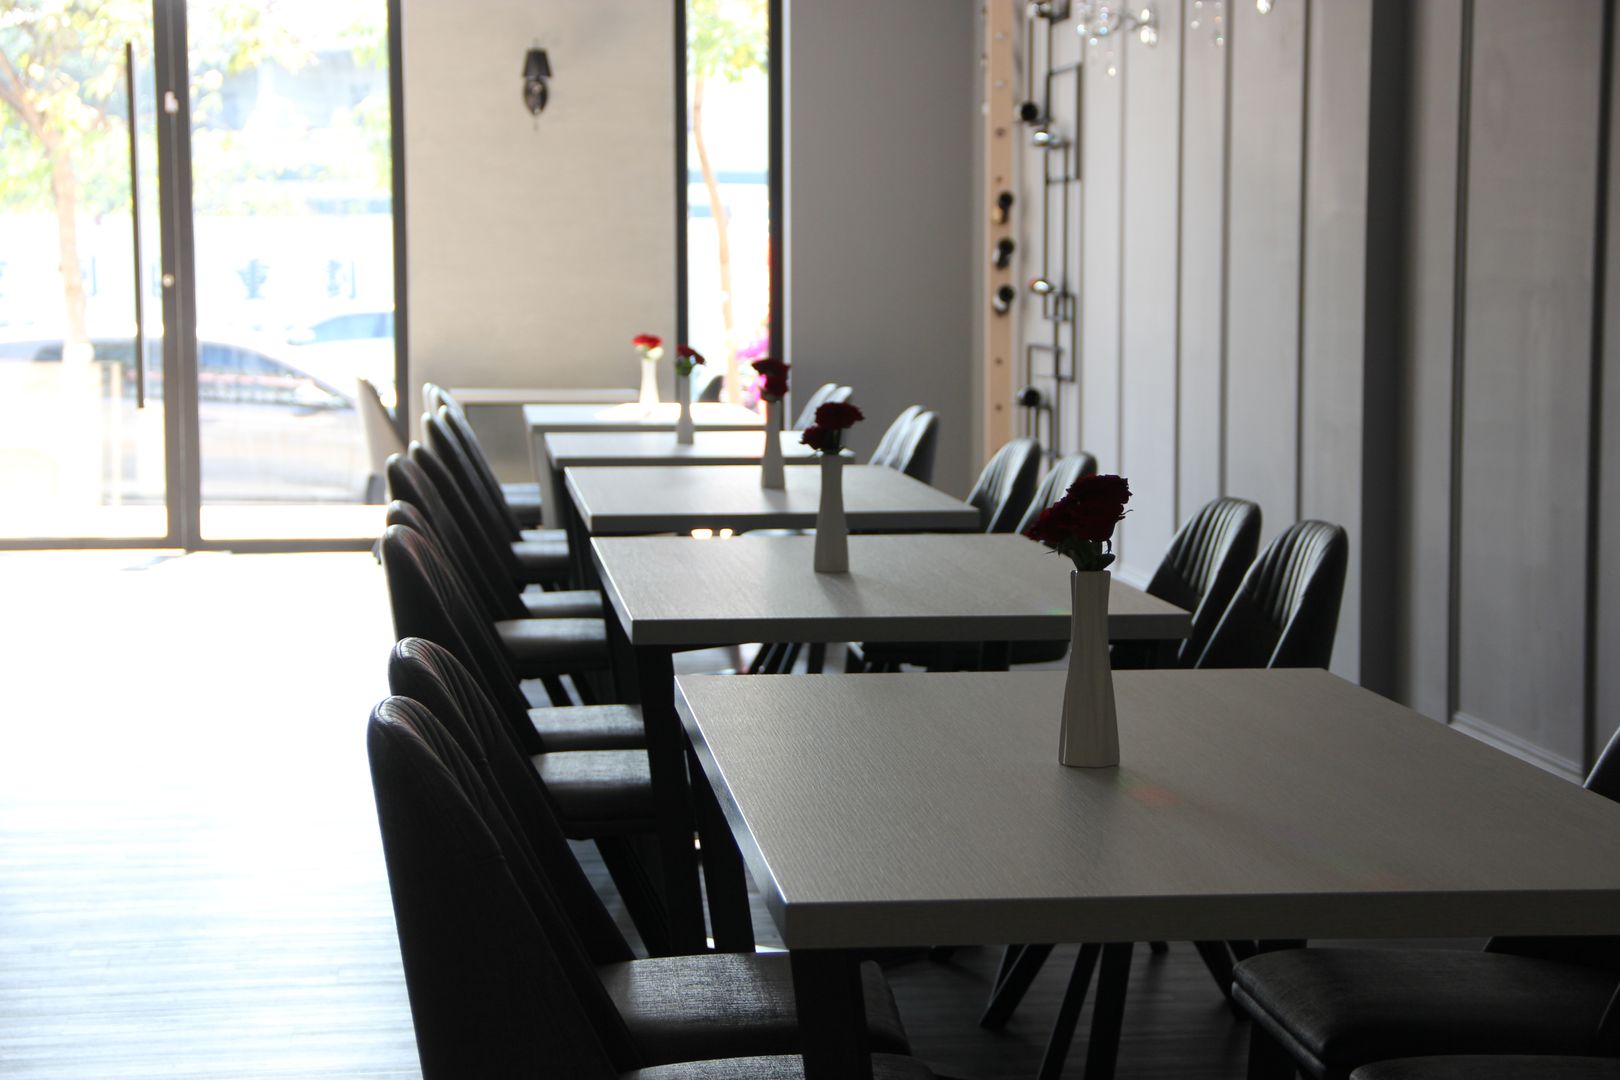 REVIVRE 法式餐廳, 木博士團隊/動念室內設計制作 木博士團隊/動念室內設計制作 Ruang Makan Klasik Tables